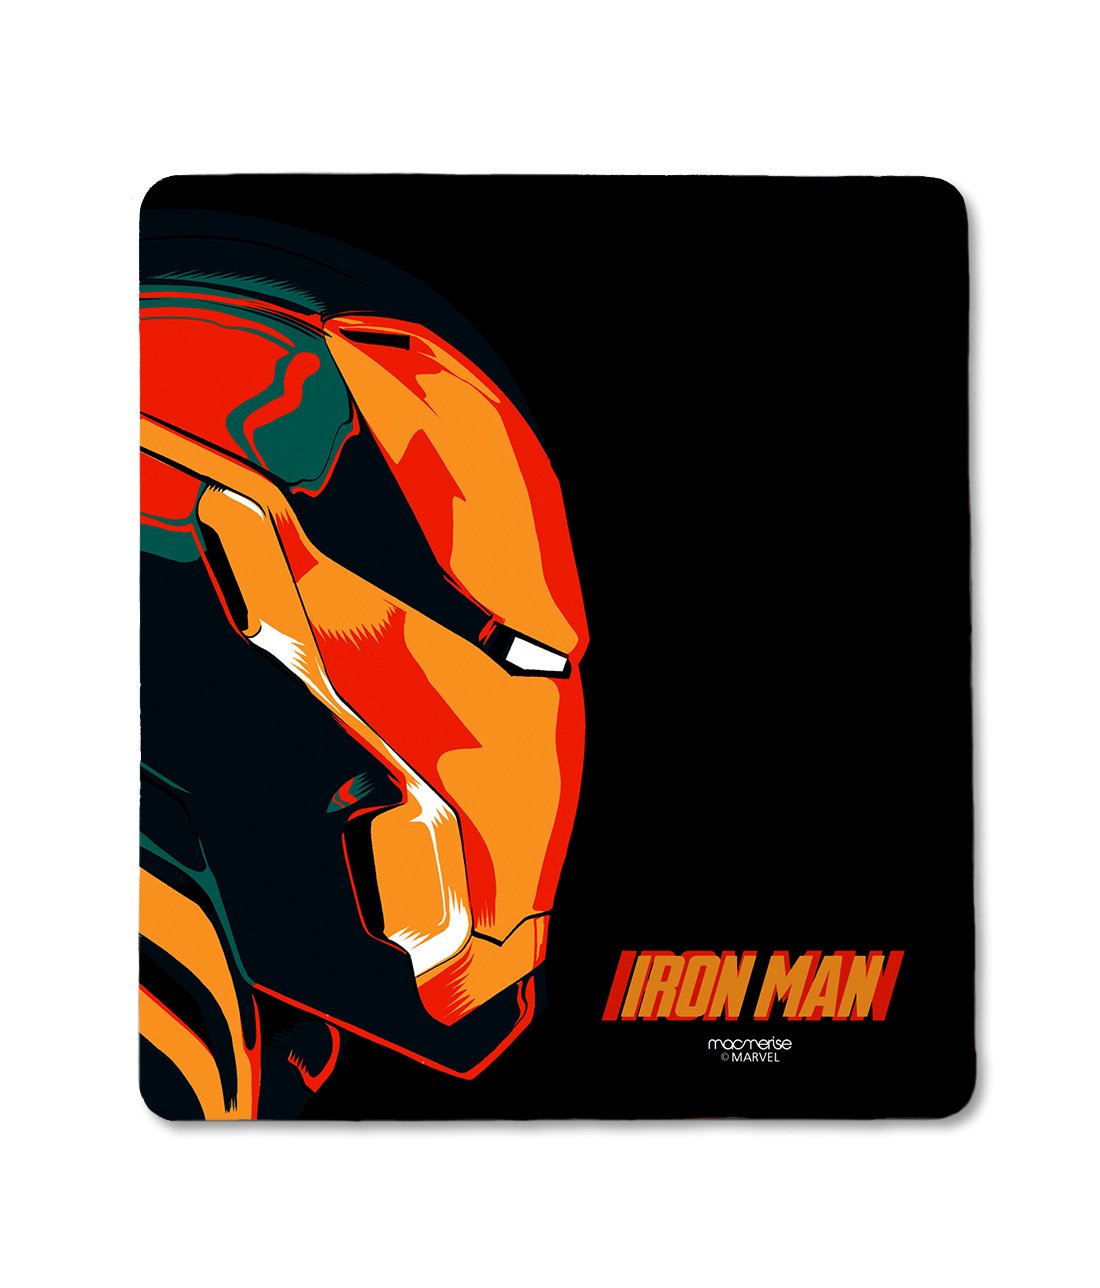 Illuminated Iron Man - Mouse Pad by Macmerise -Macmerise - India - www.superherotoystore.com